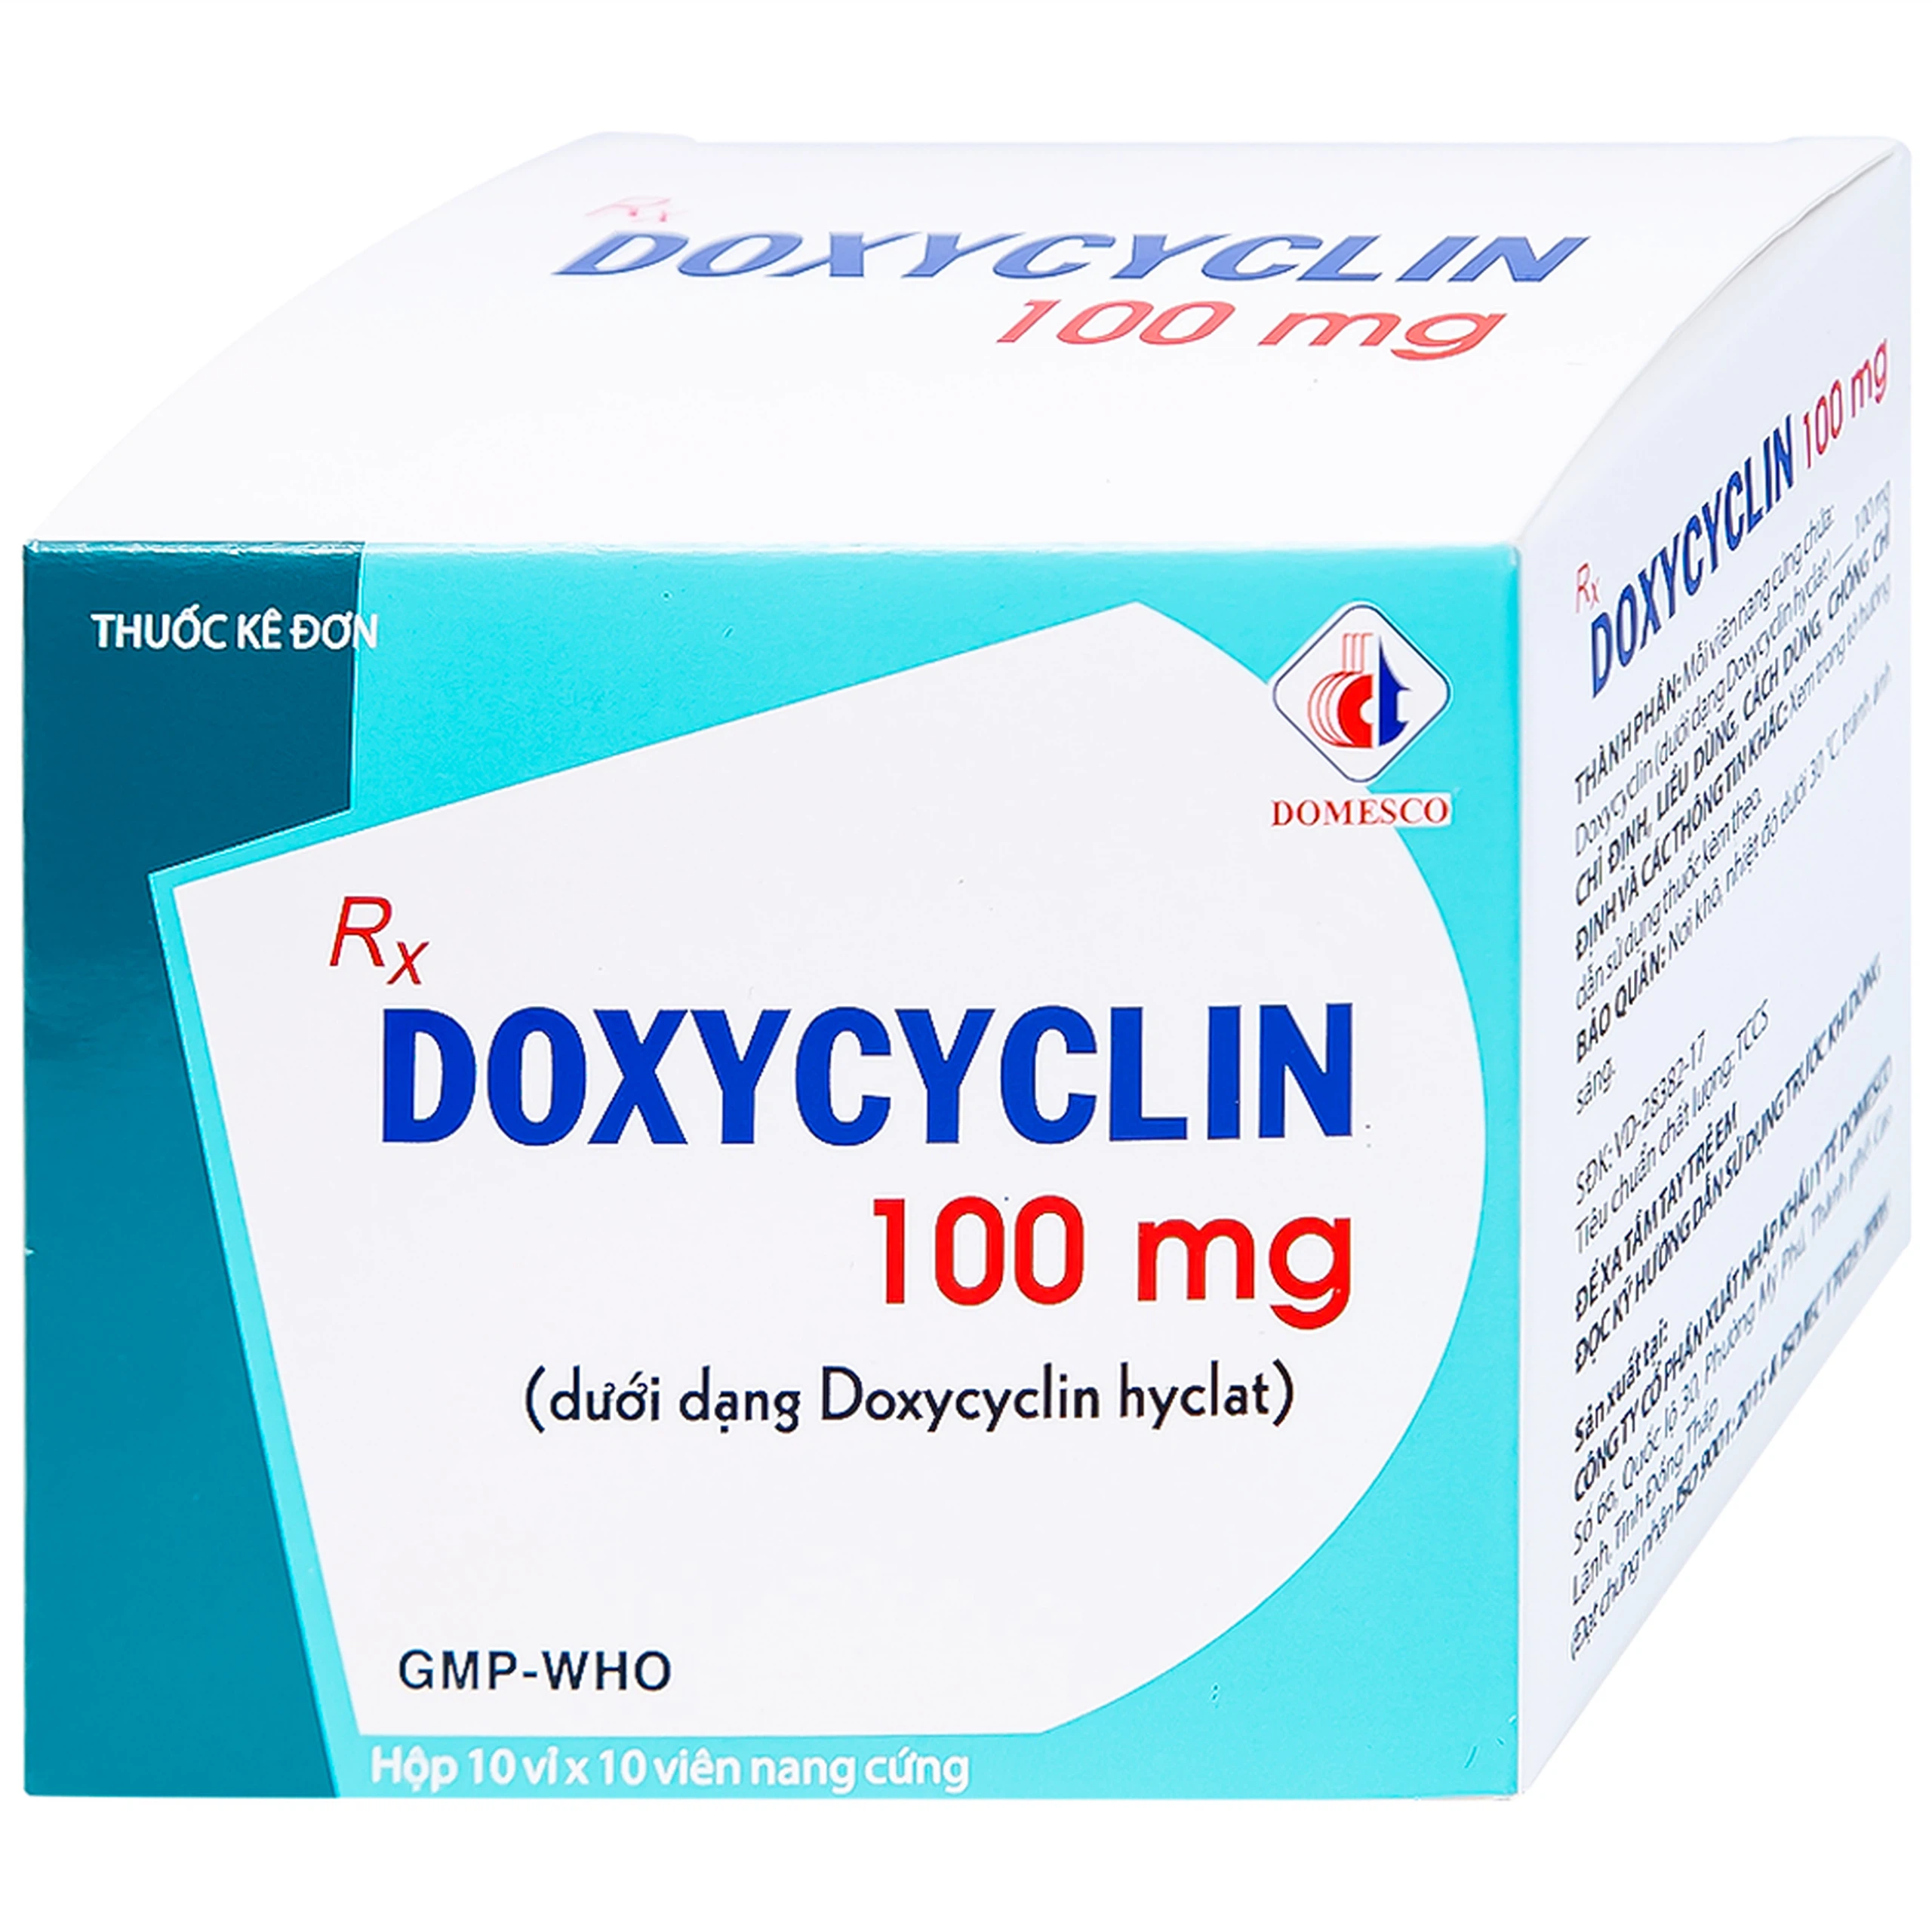 Thuốc Doxycyclin 100mg Domesco điều trị nhiễm khuẩn (10 vỉ x 10 viên)